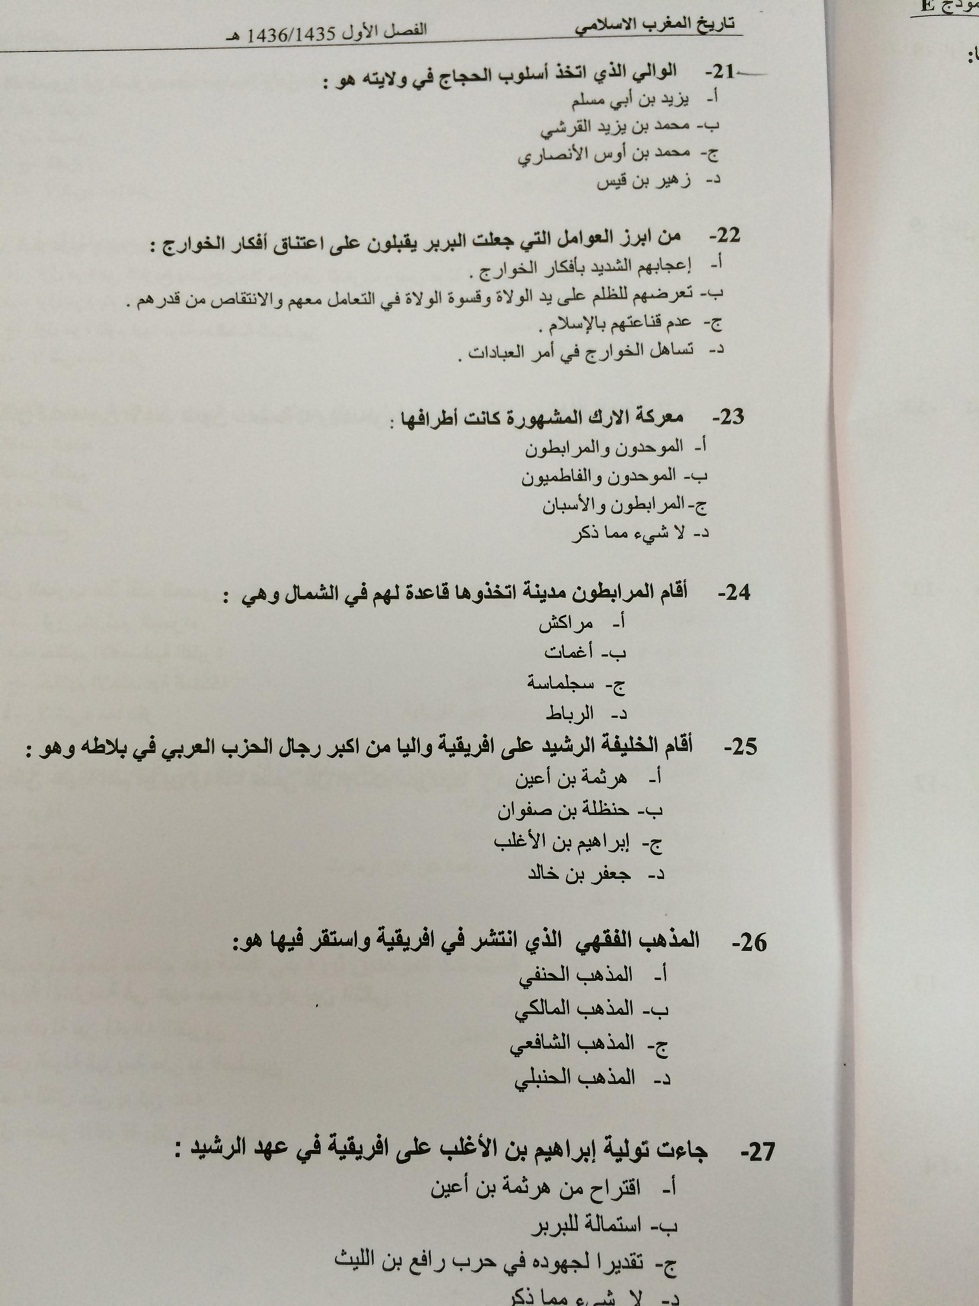 اسئلة اختبار تاريخ المغرب الاسلامي الفصل الأول 1436هـ نموذج E